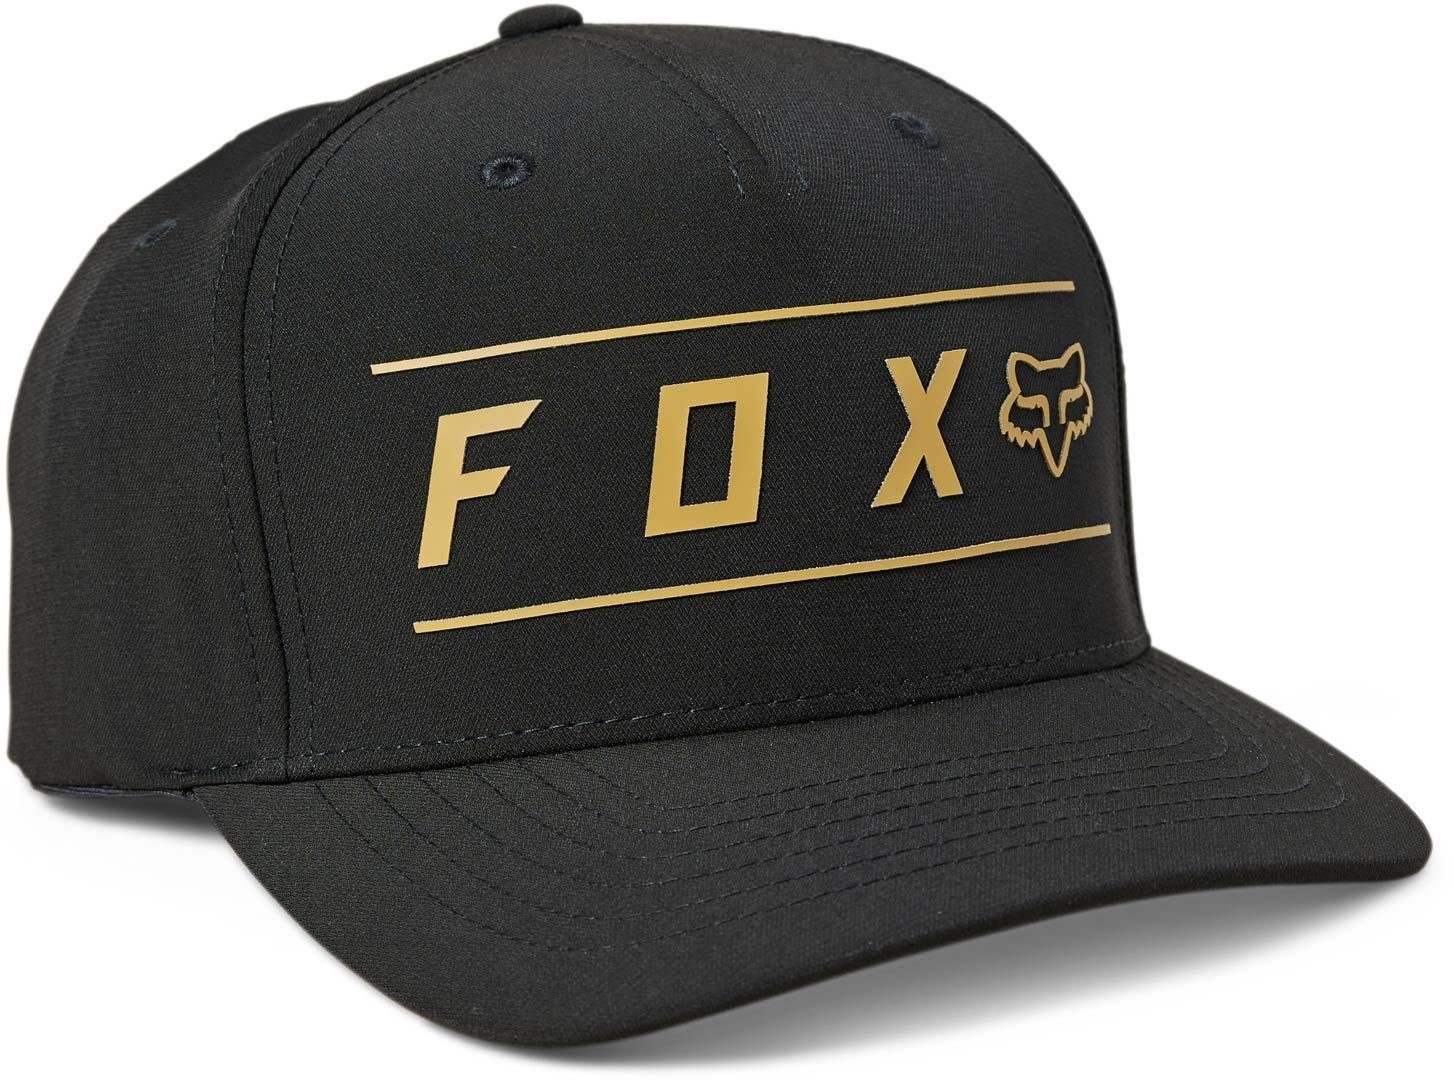 Black/Gold Flexfit Pinnacle Kappe Tech Outdoorhut Fox